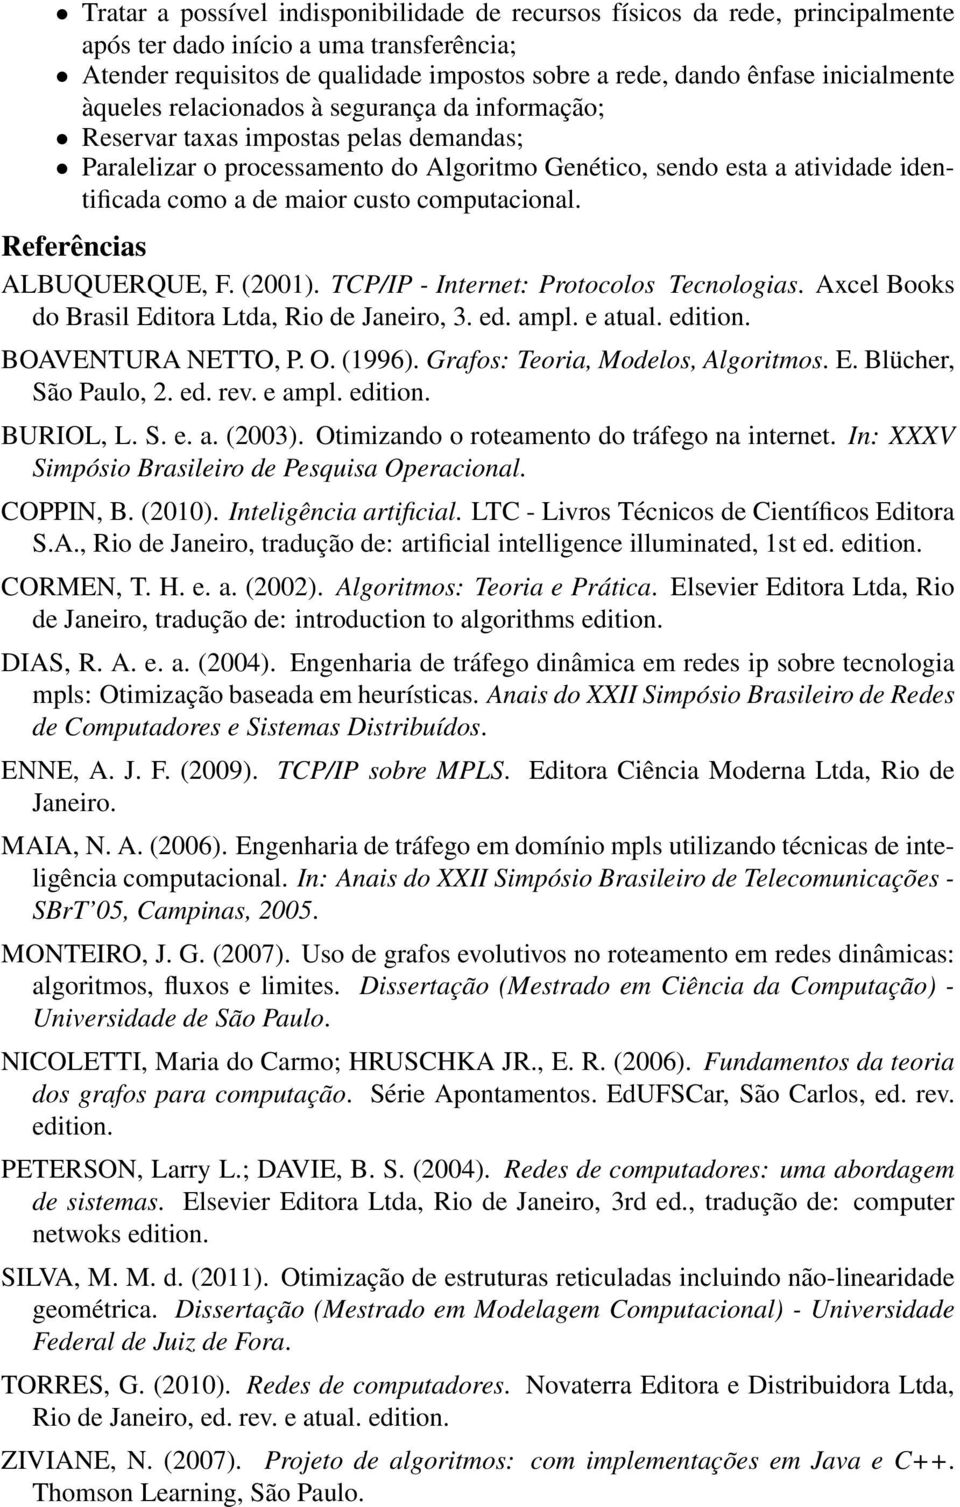 maior custo computacional. Referências ALBUQUERQUE, F. (2001). TCP/IP - Internet: Protocolos Tecnologias. Axcel Books do Brasil Editora Ltda, Rio de Janeiro, 3. ed. ampl. e atual. edition.